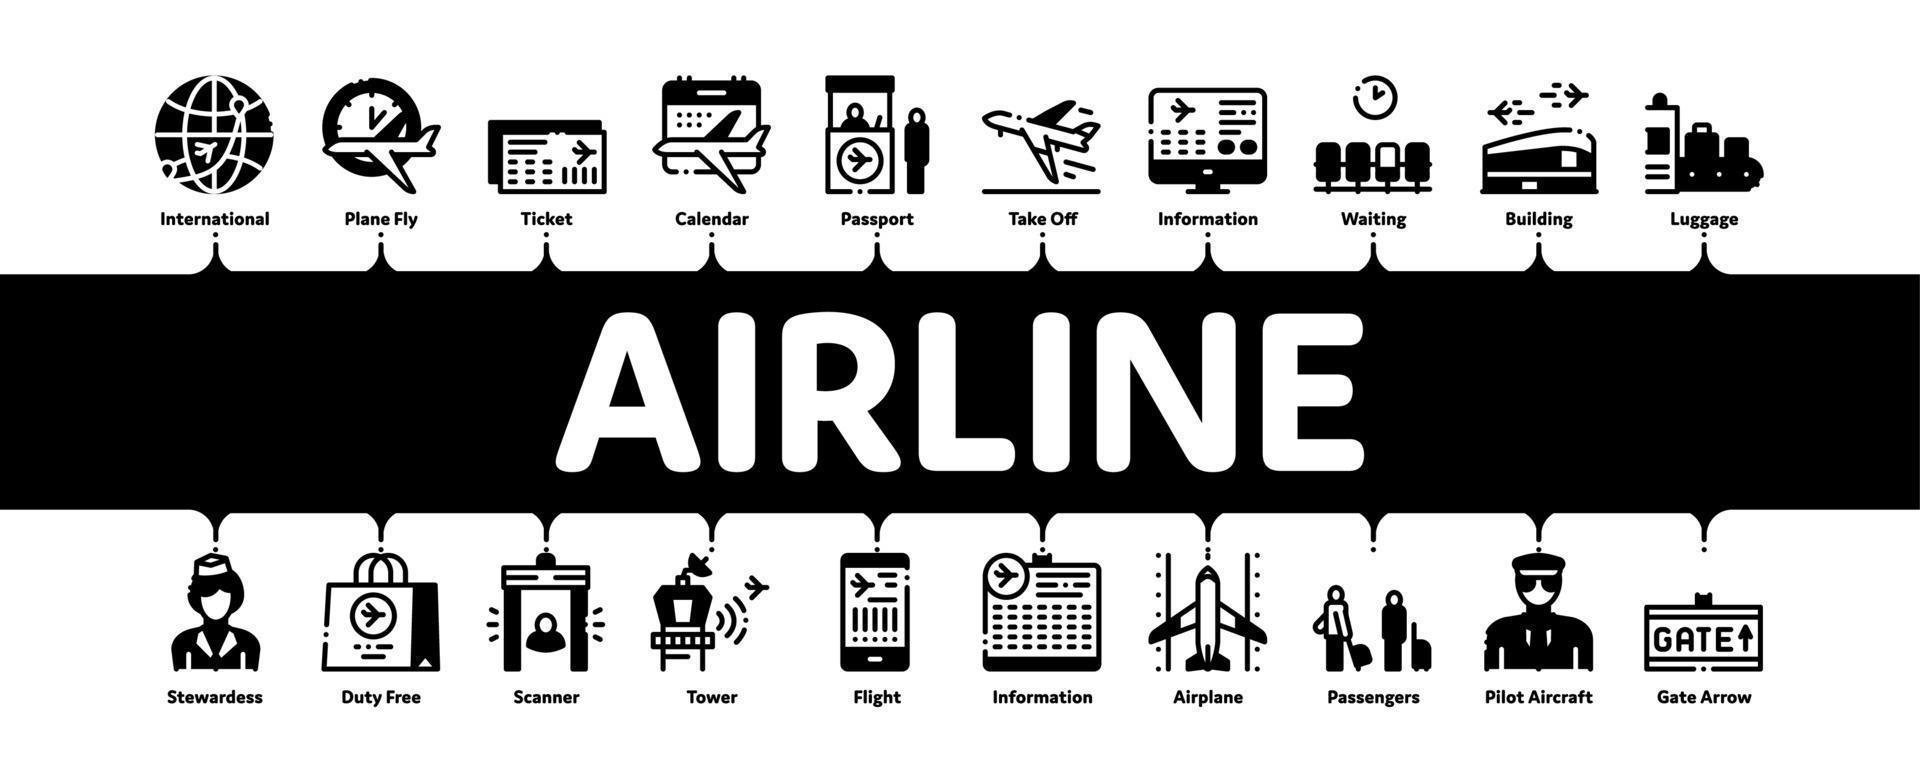 flygbolag och flygplats minimal infographic baner vektor